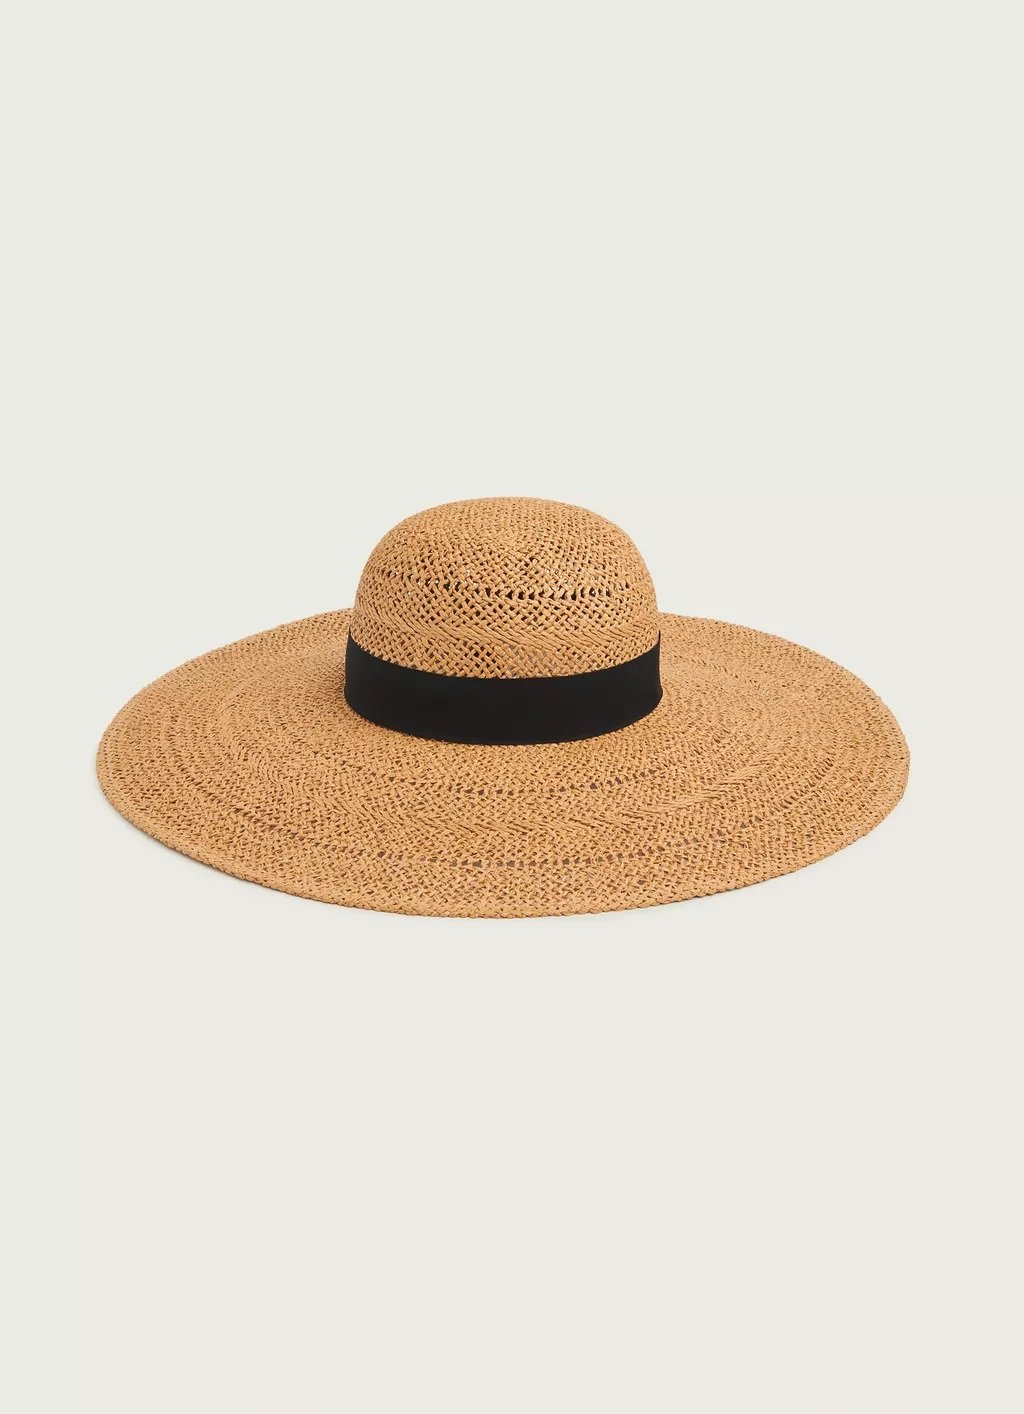 L.K. Bennett Saffron Straw Floppy Sun Hat in Natural.jpg